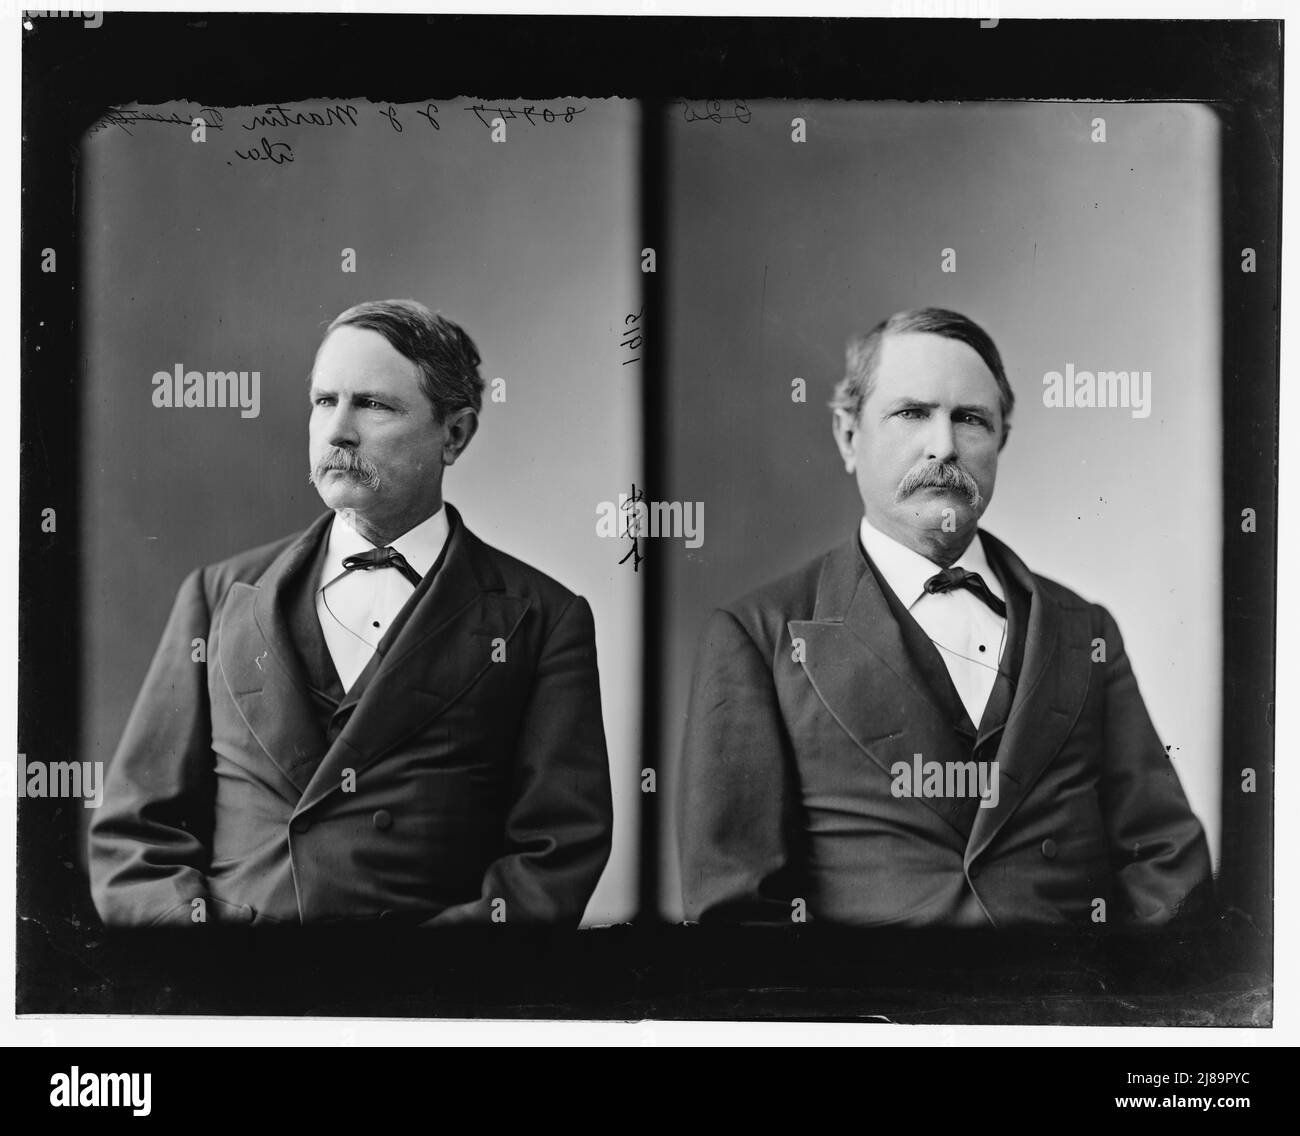 Martin, Hon. J.J. of Alabama?, between 1865 and 1880. Stock Photo